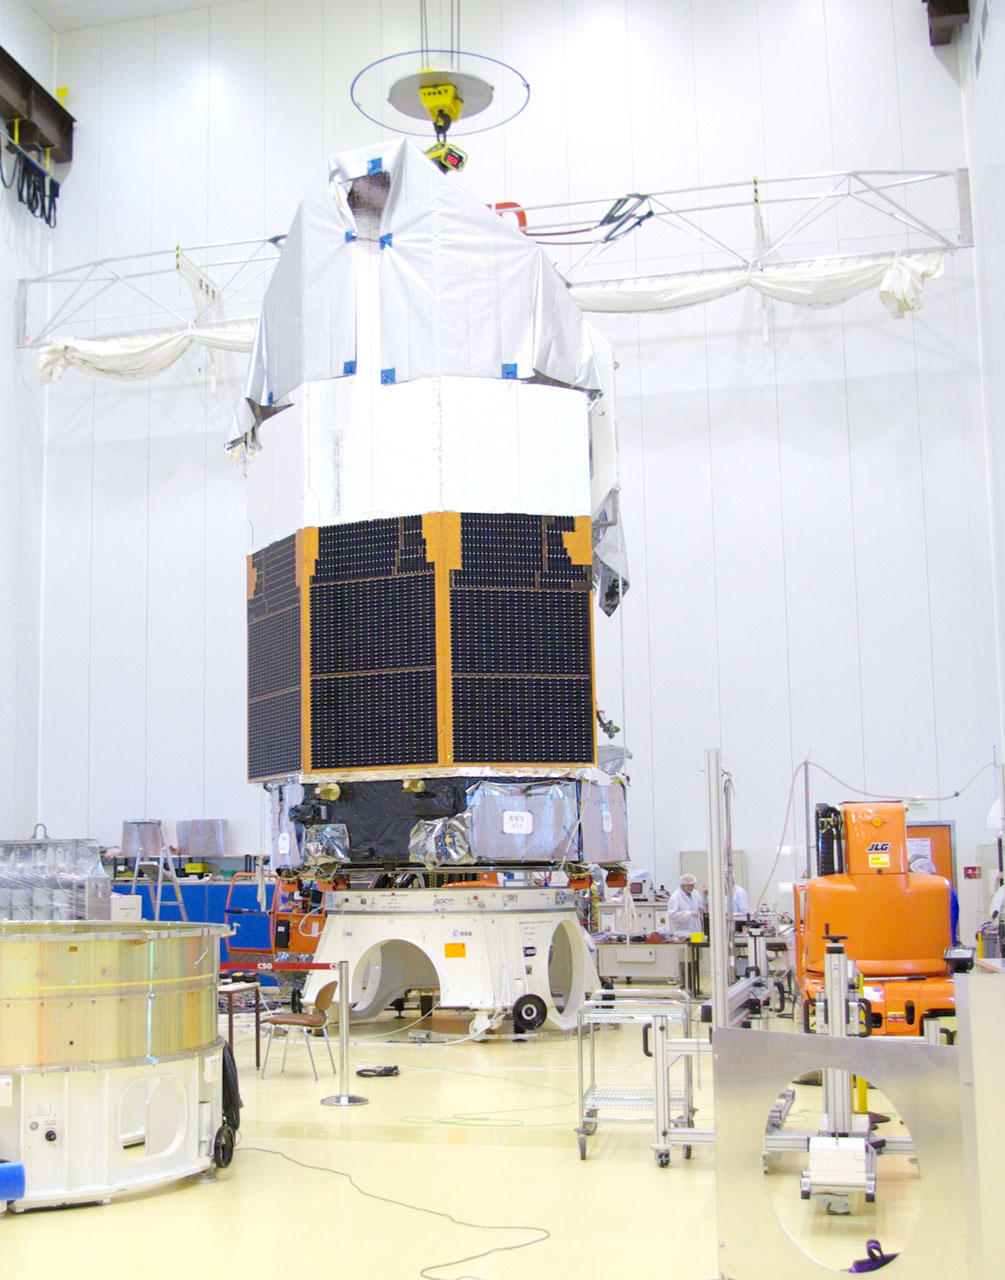 Weighing the Herschel spacecraft in the S1B building